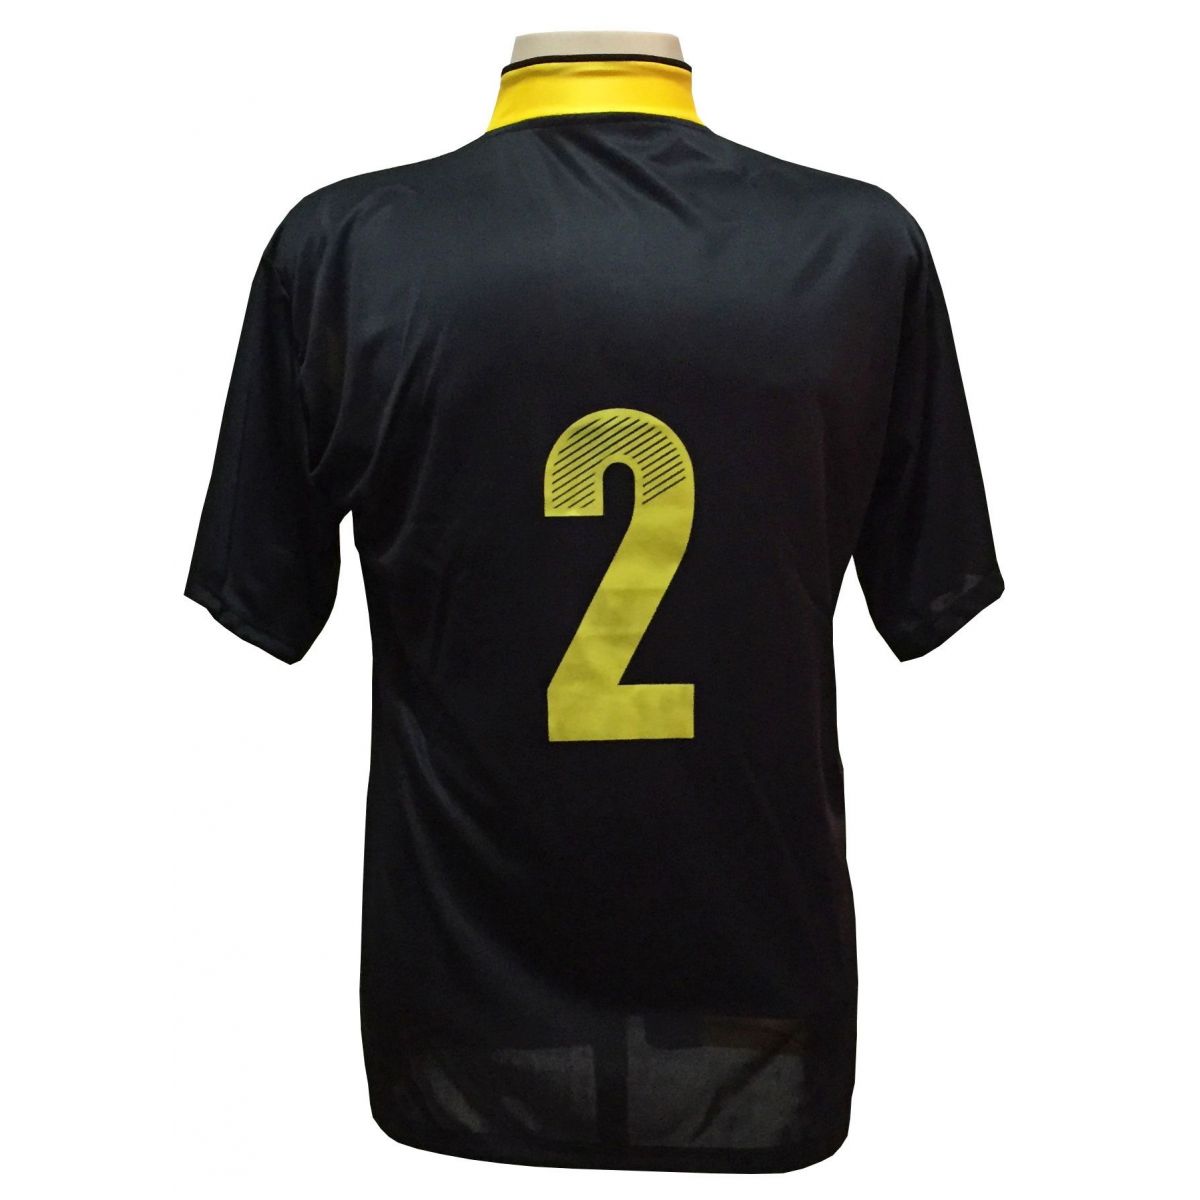 Uniforme Esportivo com 14 camisas modelo Suécia Preto/Amarelo + 14 calções modelo Copa + 1 Goleiro + Brindes